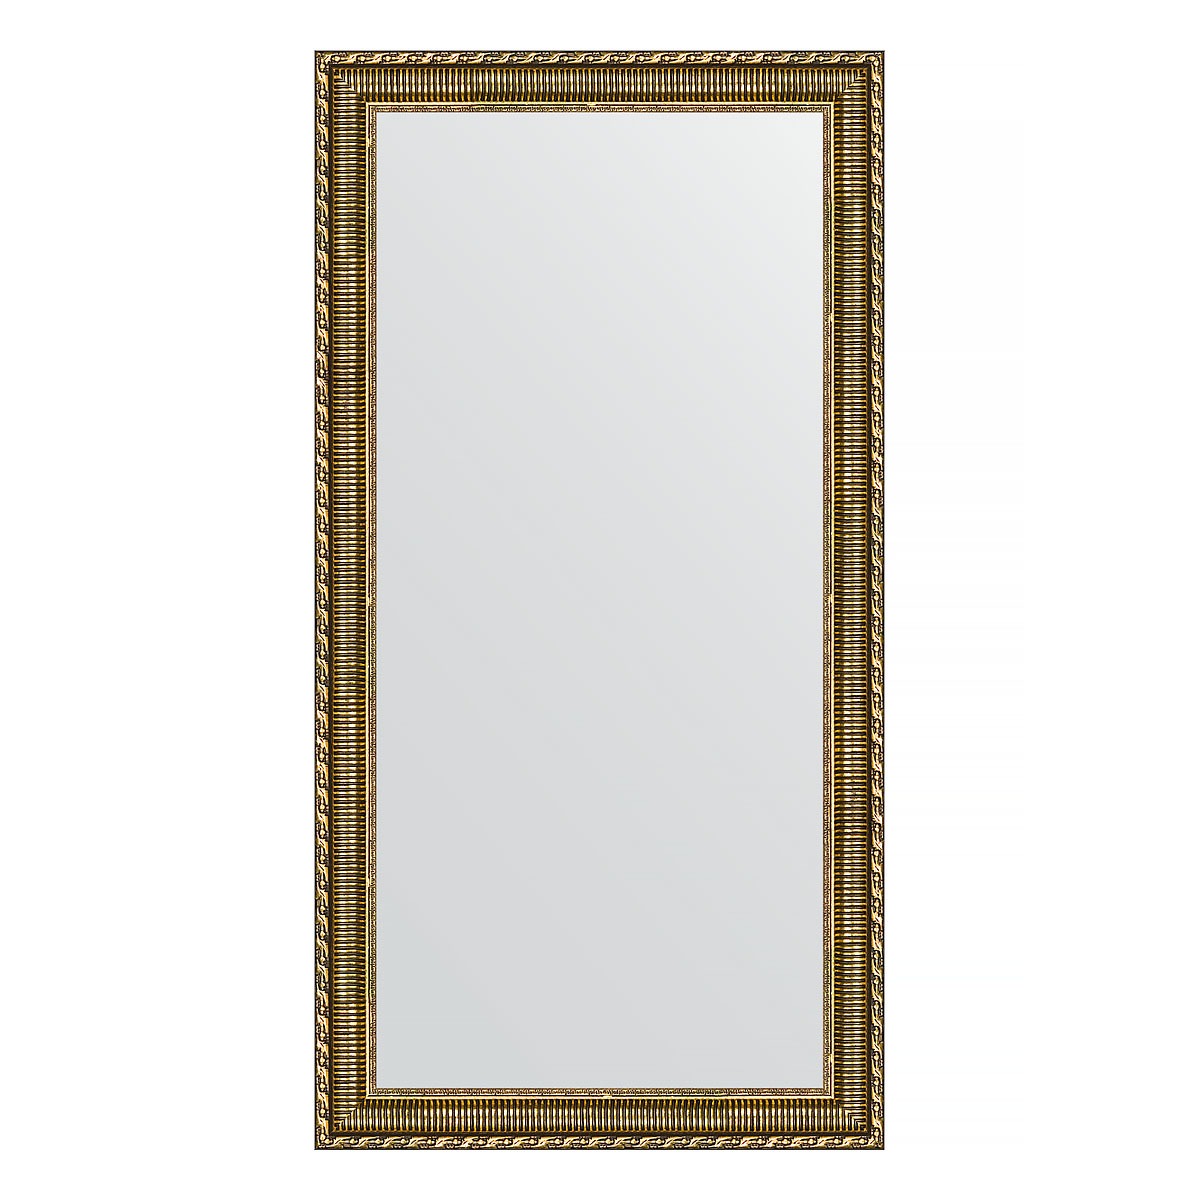 Зеркало в багетной раме Evoform золотой акведук 61 мм 54х104 см зеркало в багетной раме evoform золотой акведук 61 мм 54х104 см